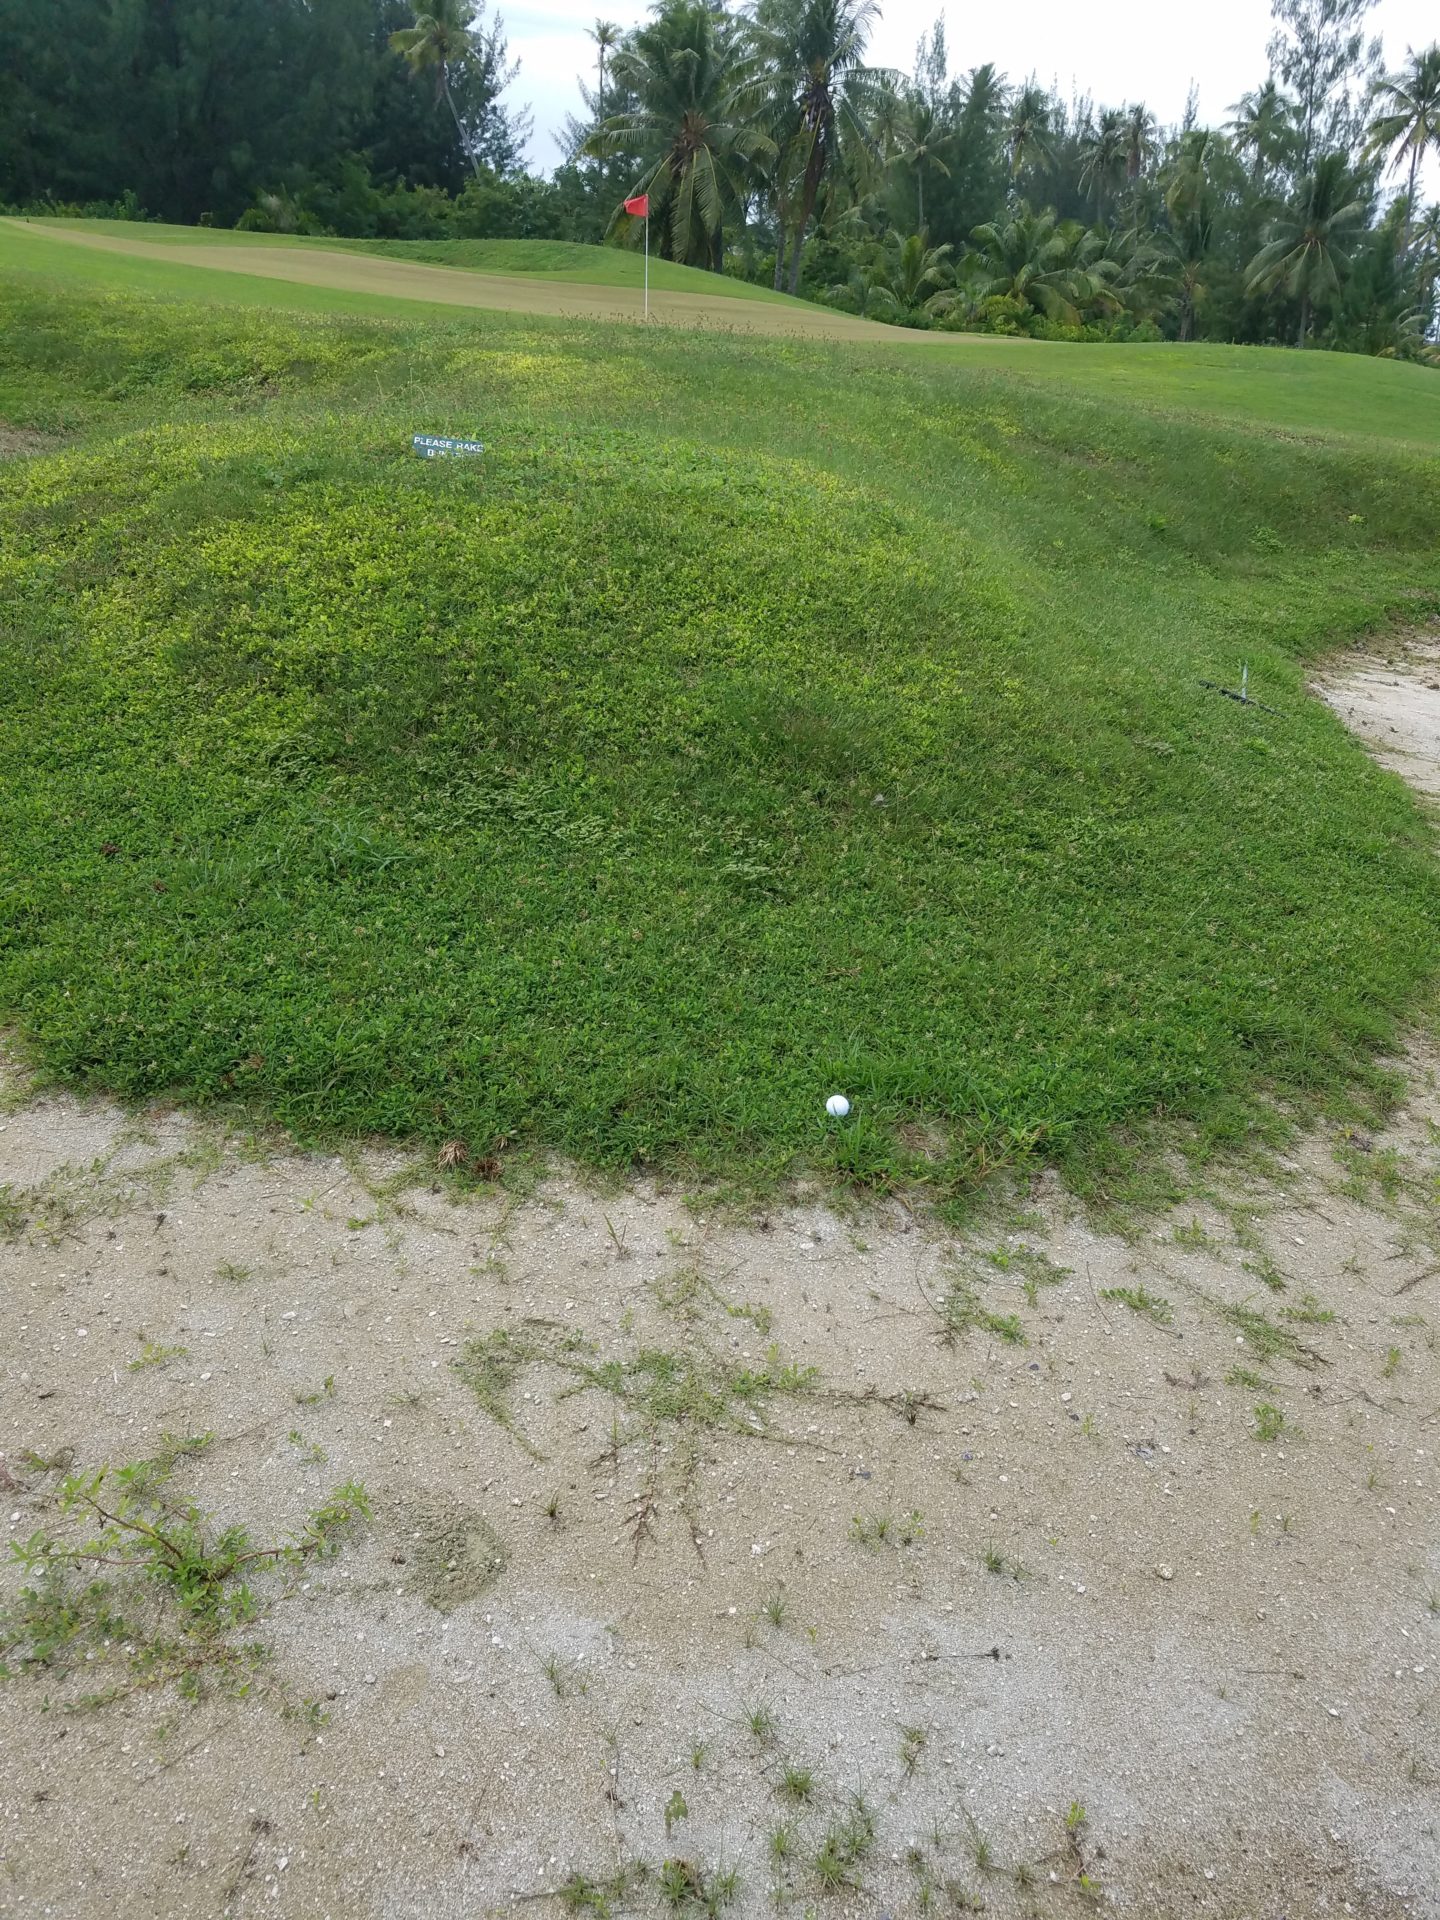 a golf ball on a hill